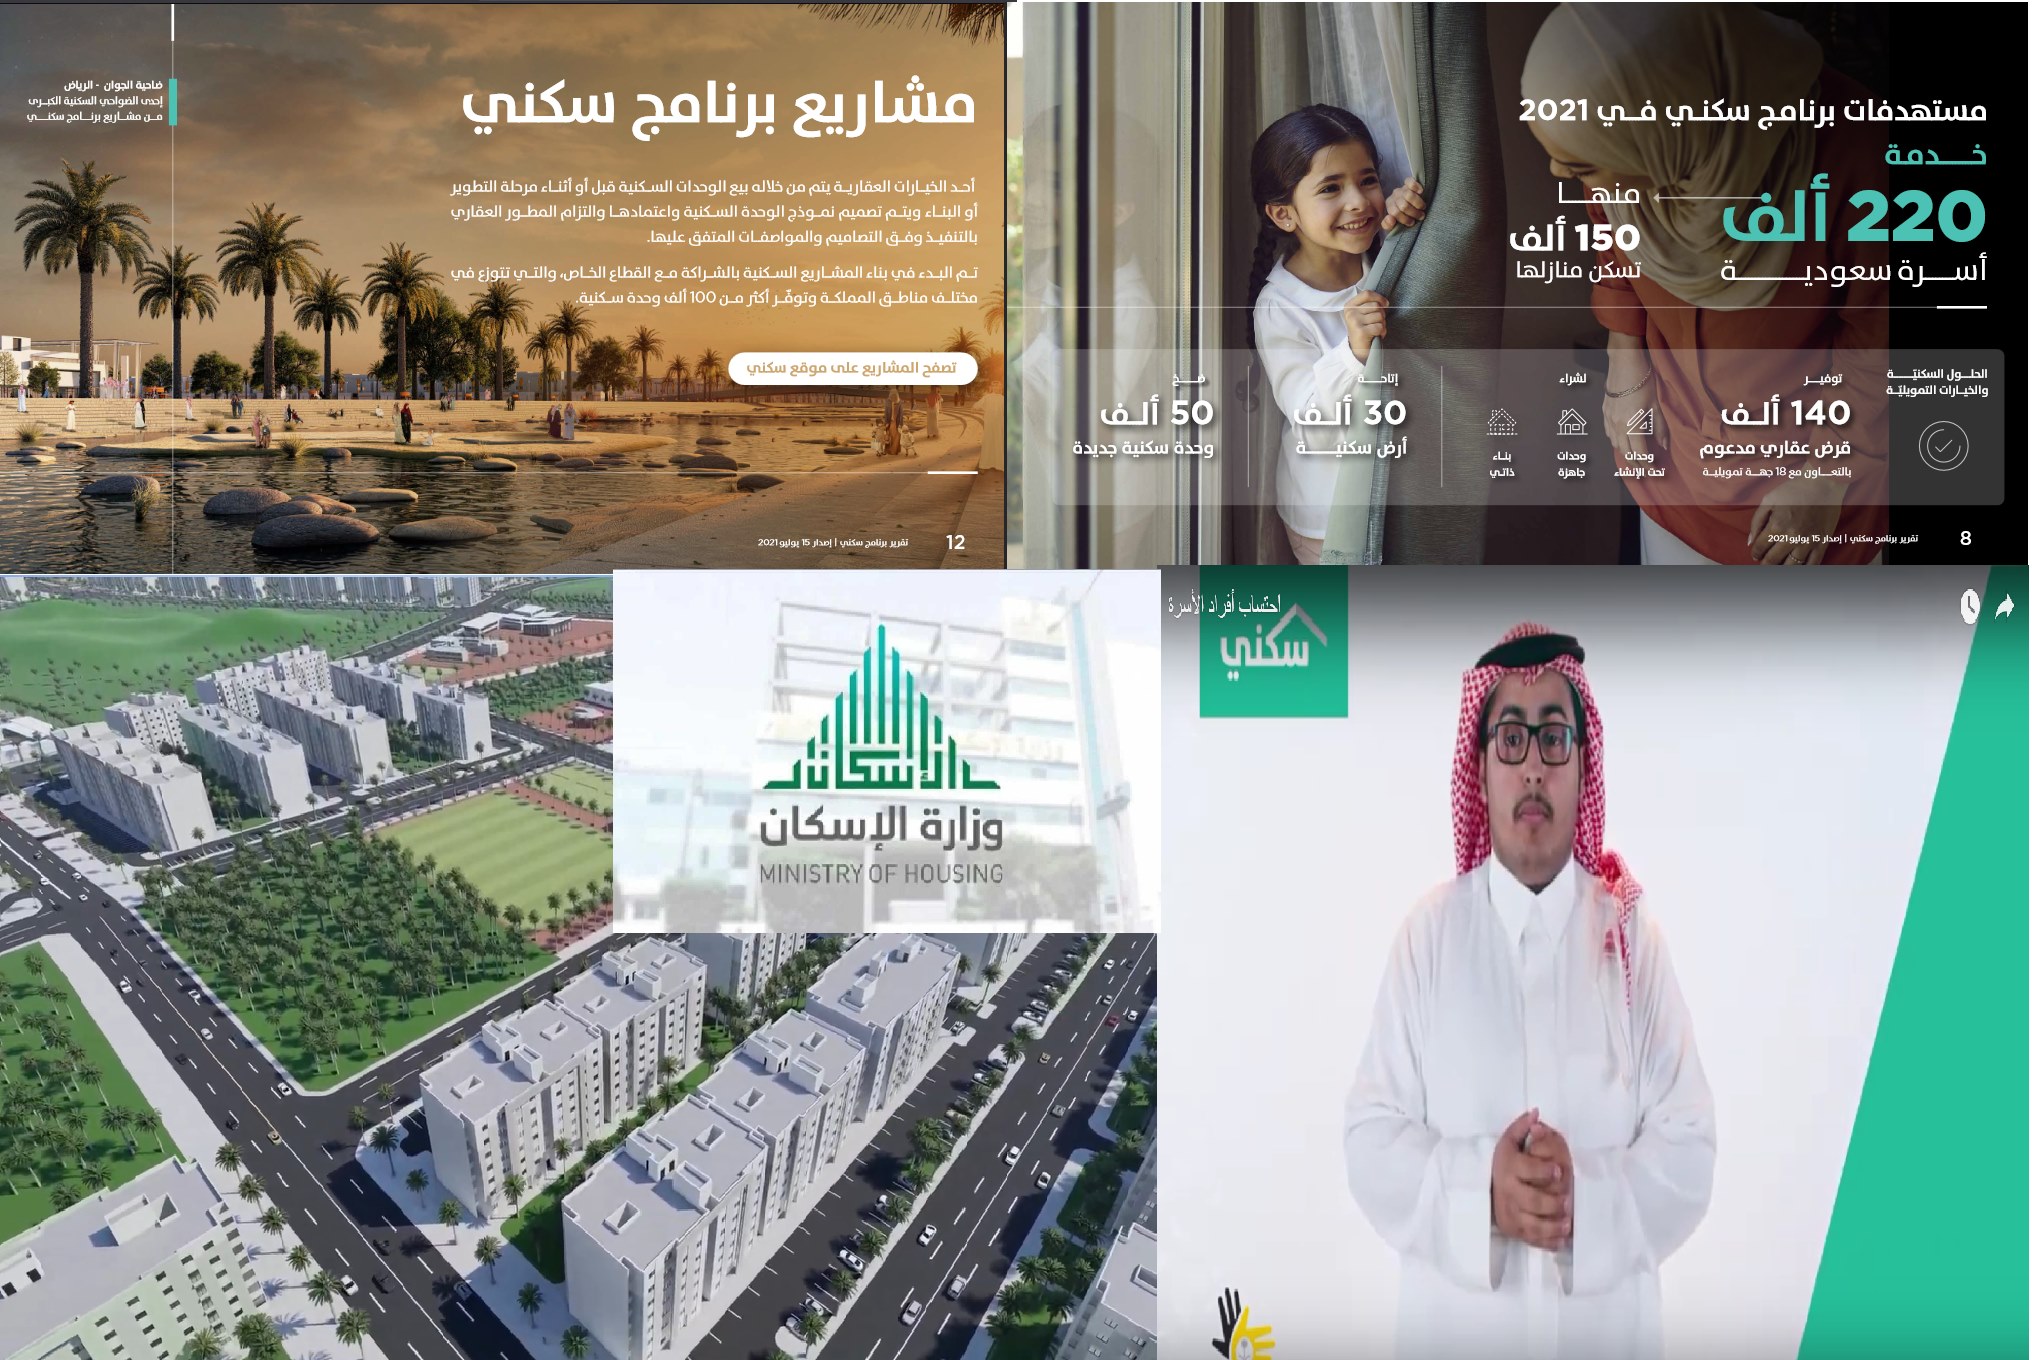 sakani الإسكان التنموي على برنامج سكني السعودي رقم سكني الموحد وتحديث المستشار العقاري.jpg